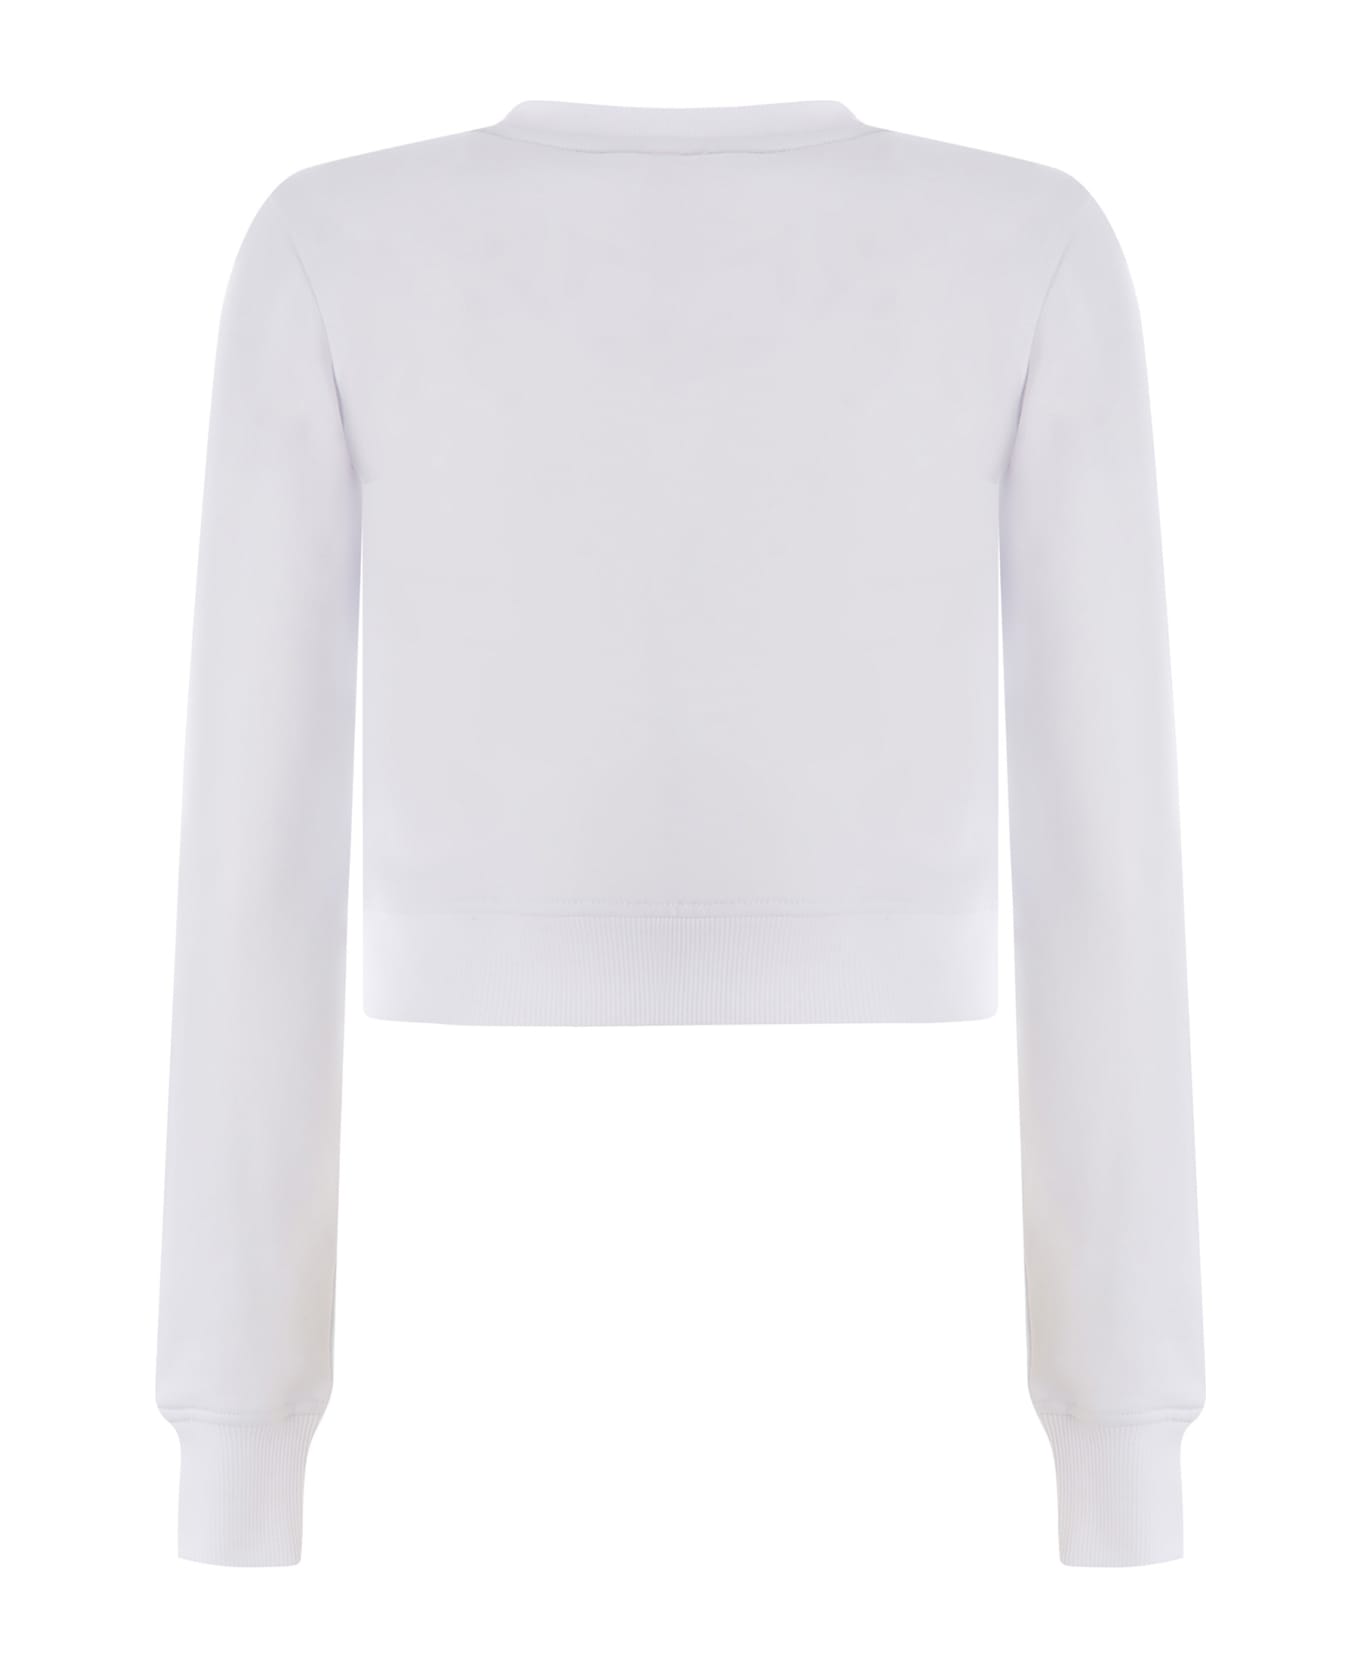 Diesel Sweatshirt Diesel "f-slimmy-od" Made Of Cotton Blend - Bianco